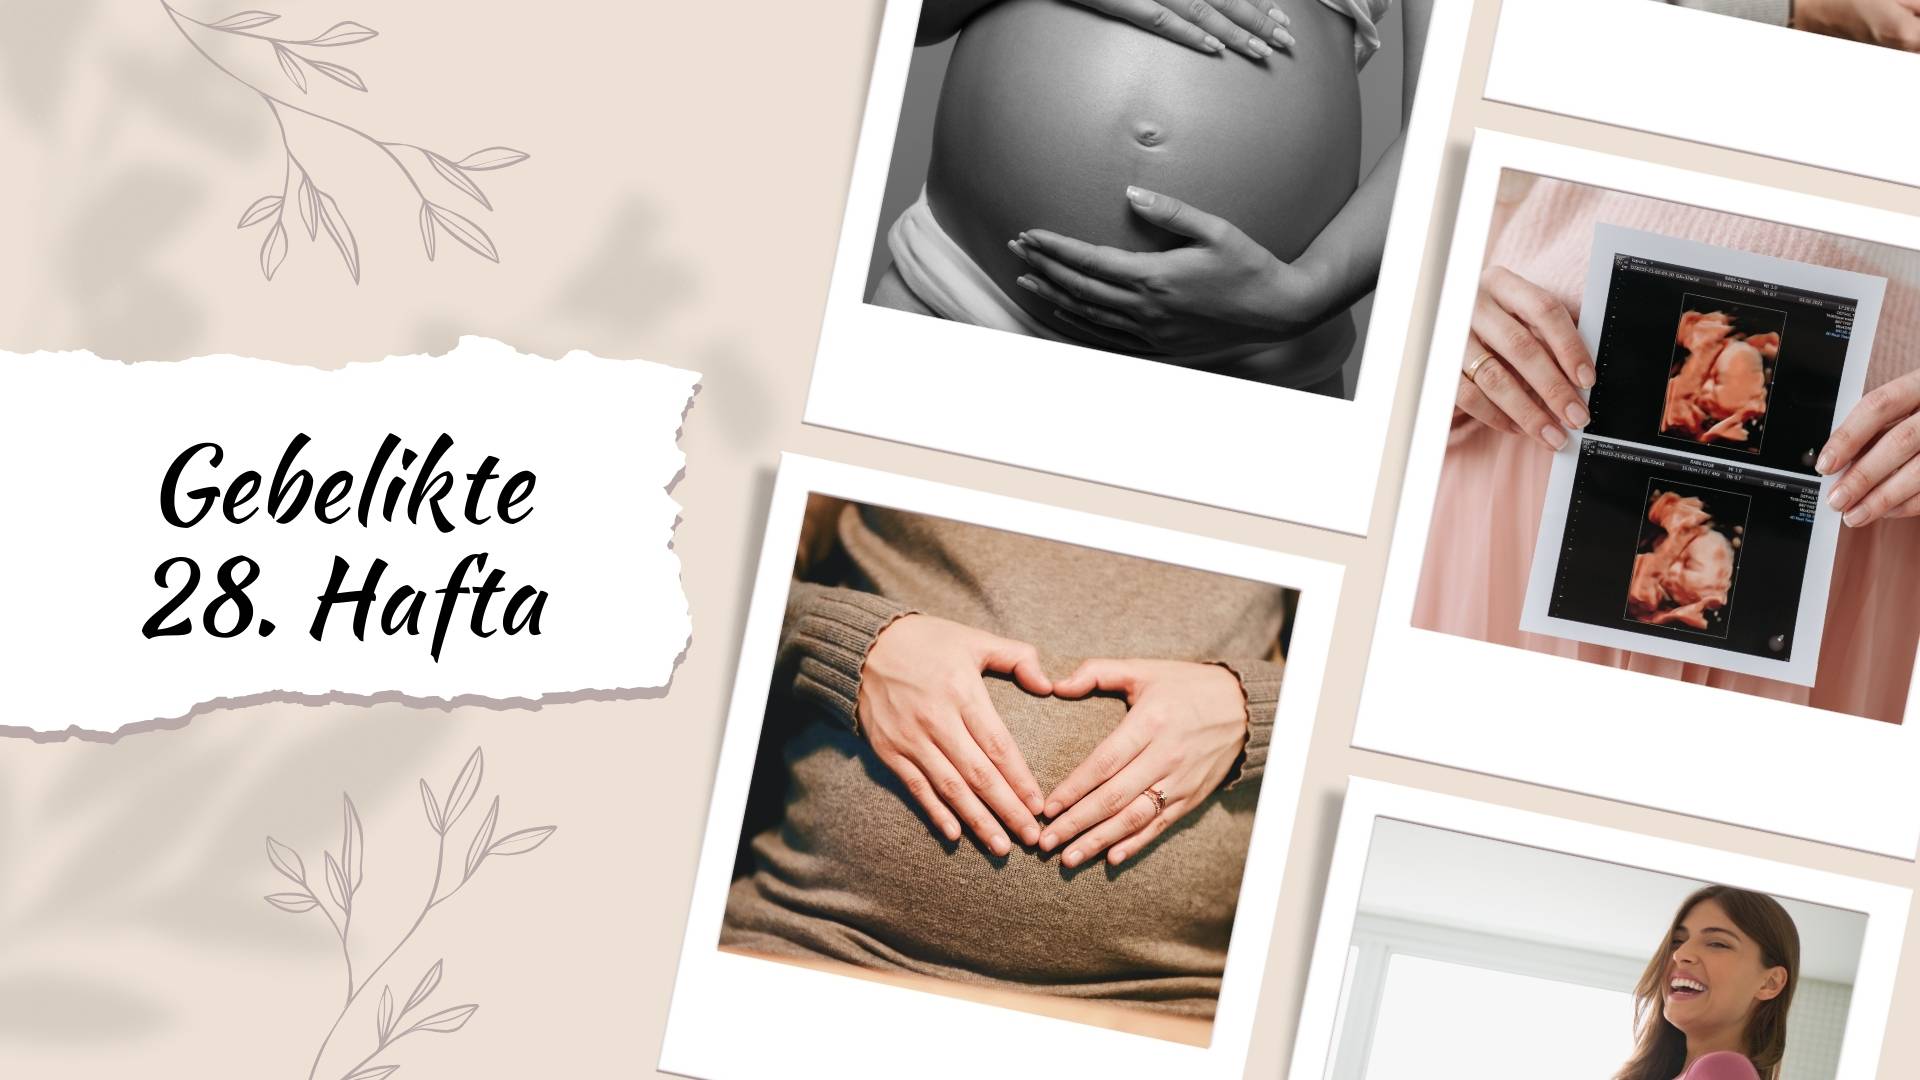 Hamilelikte 28. hafta gebelikte beslenme, egzersiz, duygusal destek, bebek odası hazırlığı ve planlamalar hakkında bilmeniz gereken her şey!